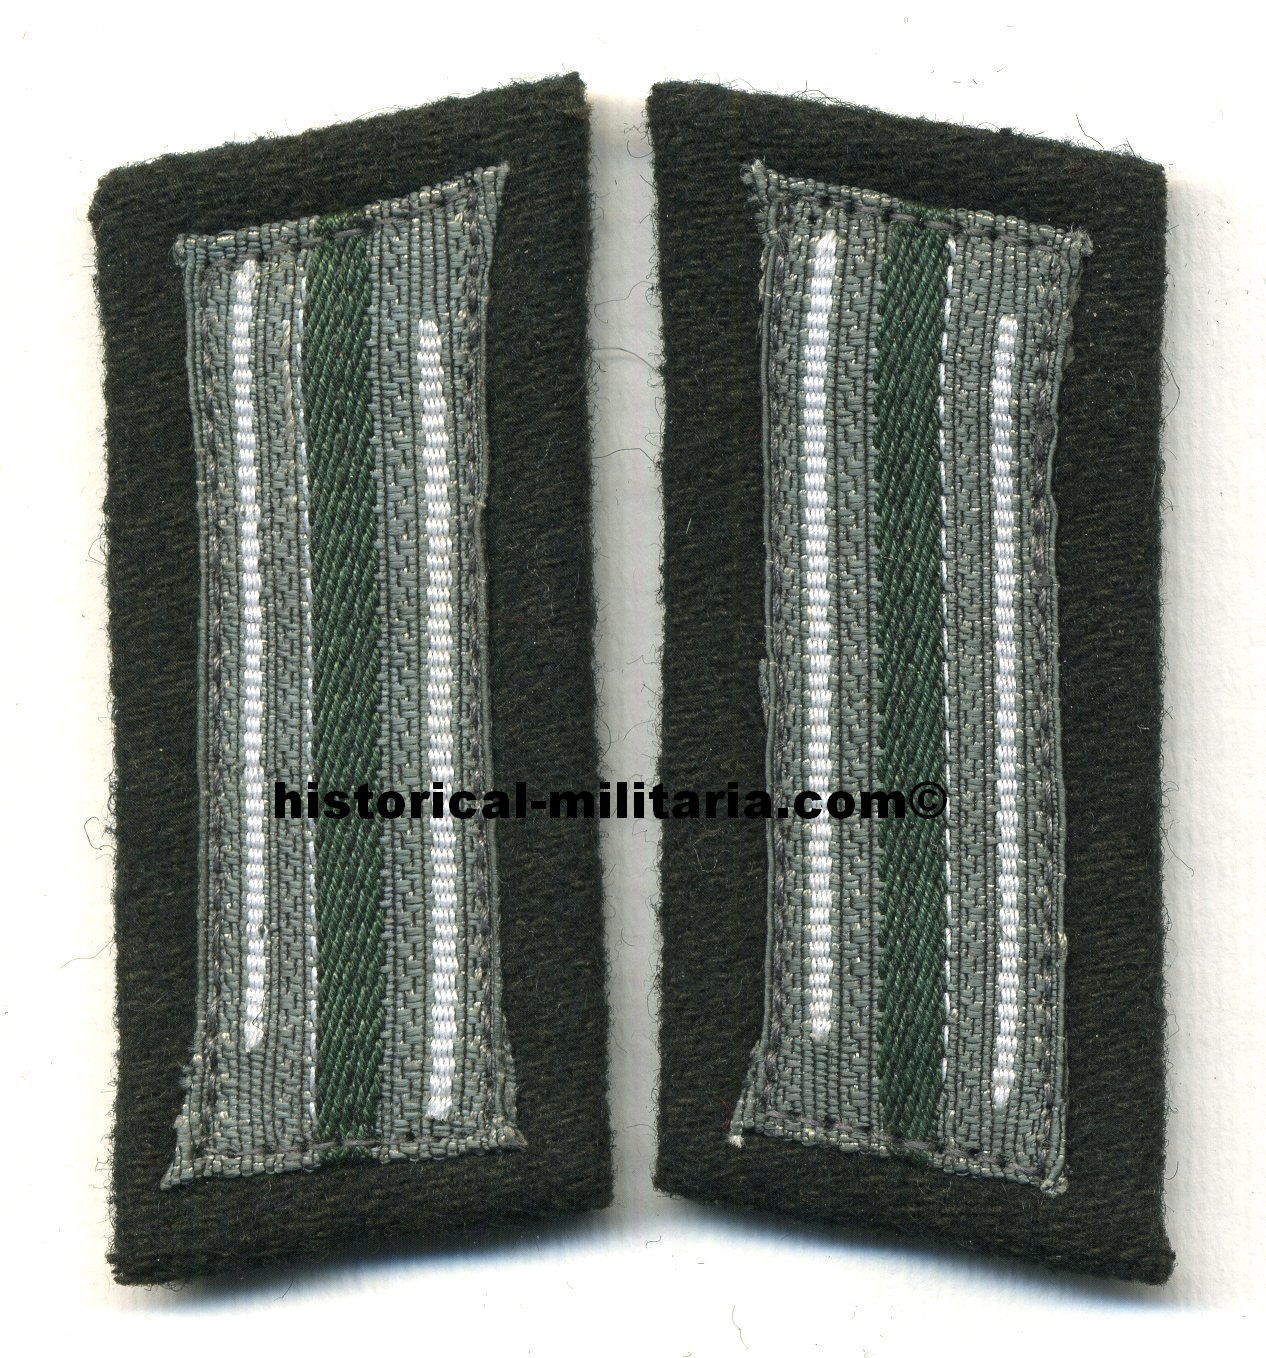 EM/ NCO woven collar litzen INFANTRY - Doppellitze Infanterie Mannschaftskragenpatten Wehrmacht - Mostrine della Fanteria tedesca da truppa Heer circa 1940